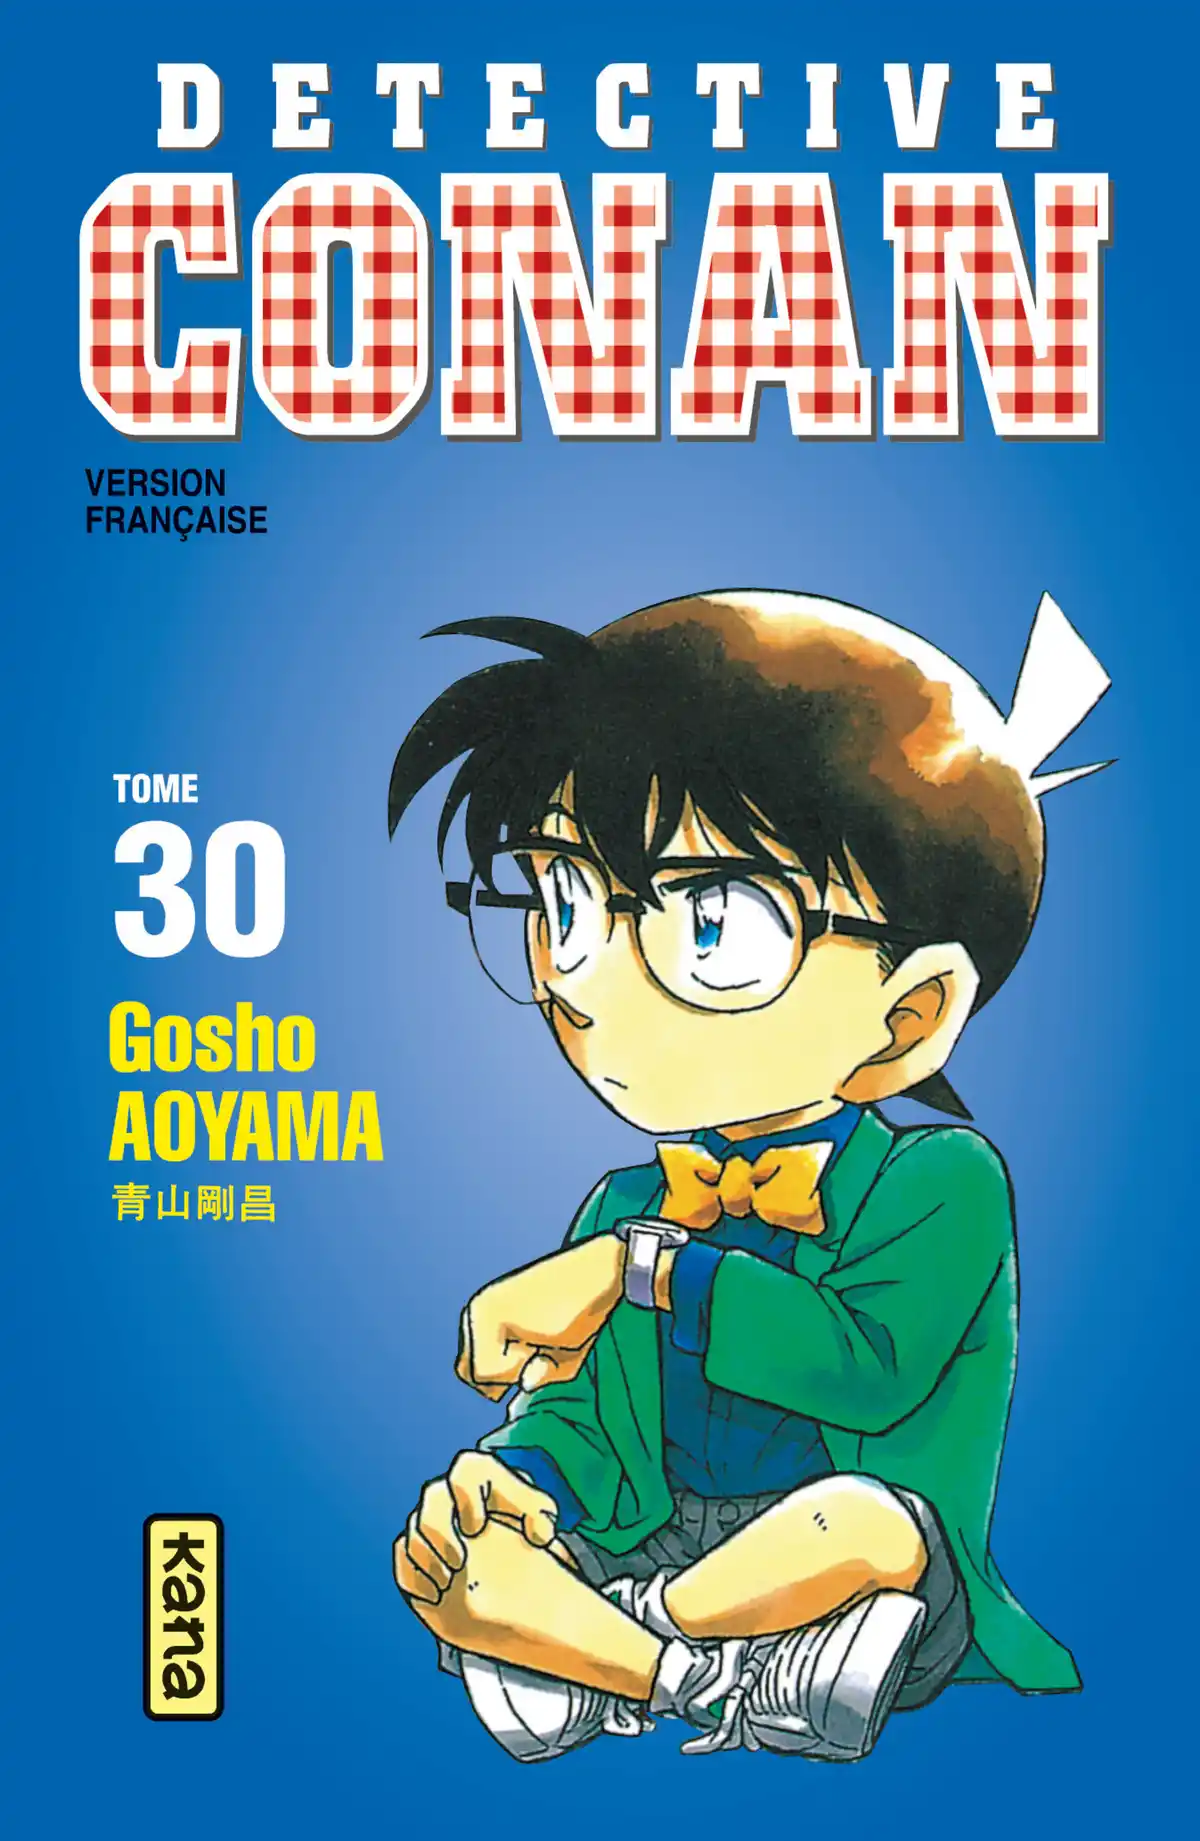 Détective Conan Volume 30 page 1